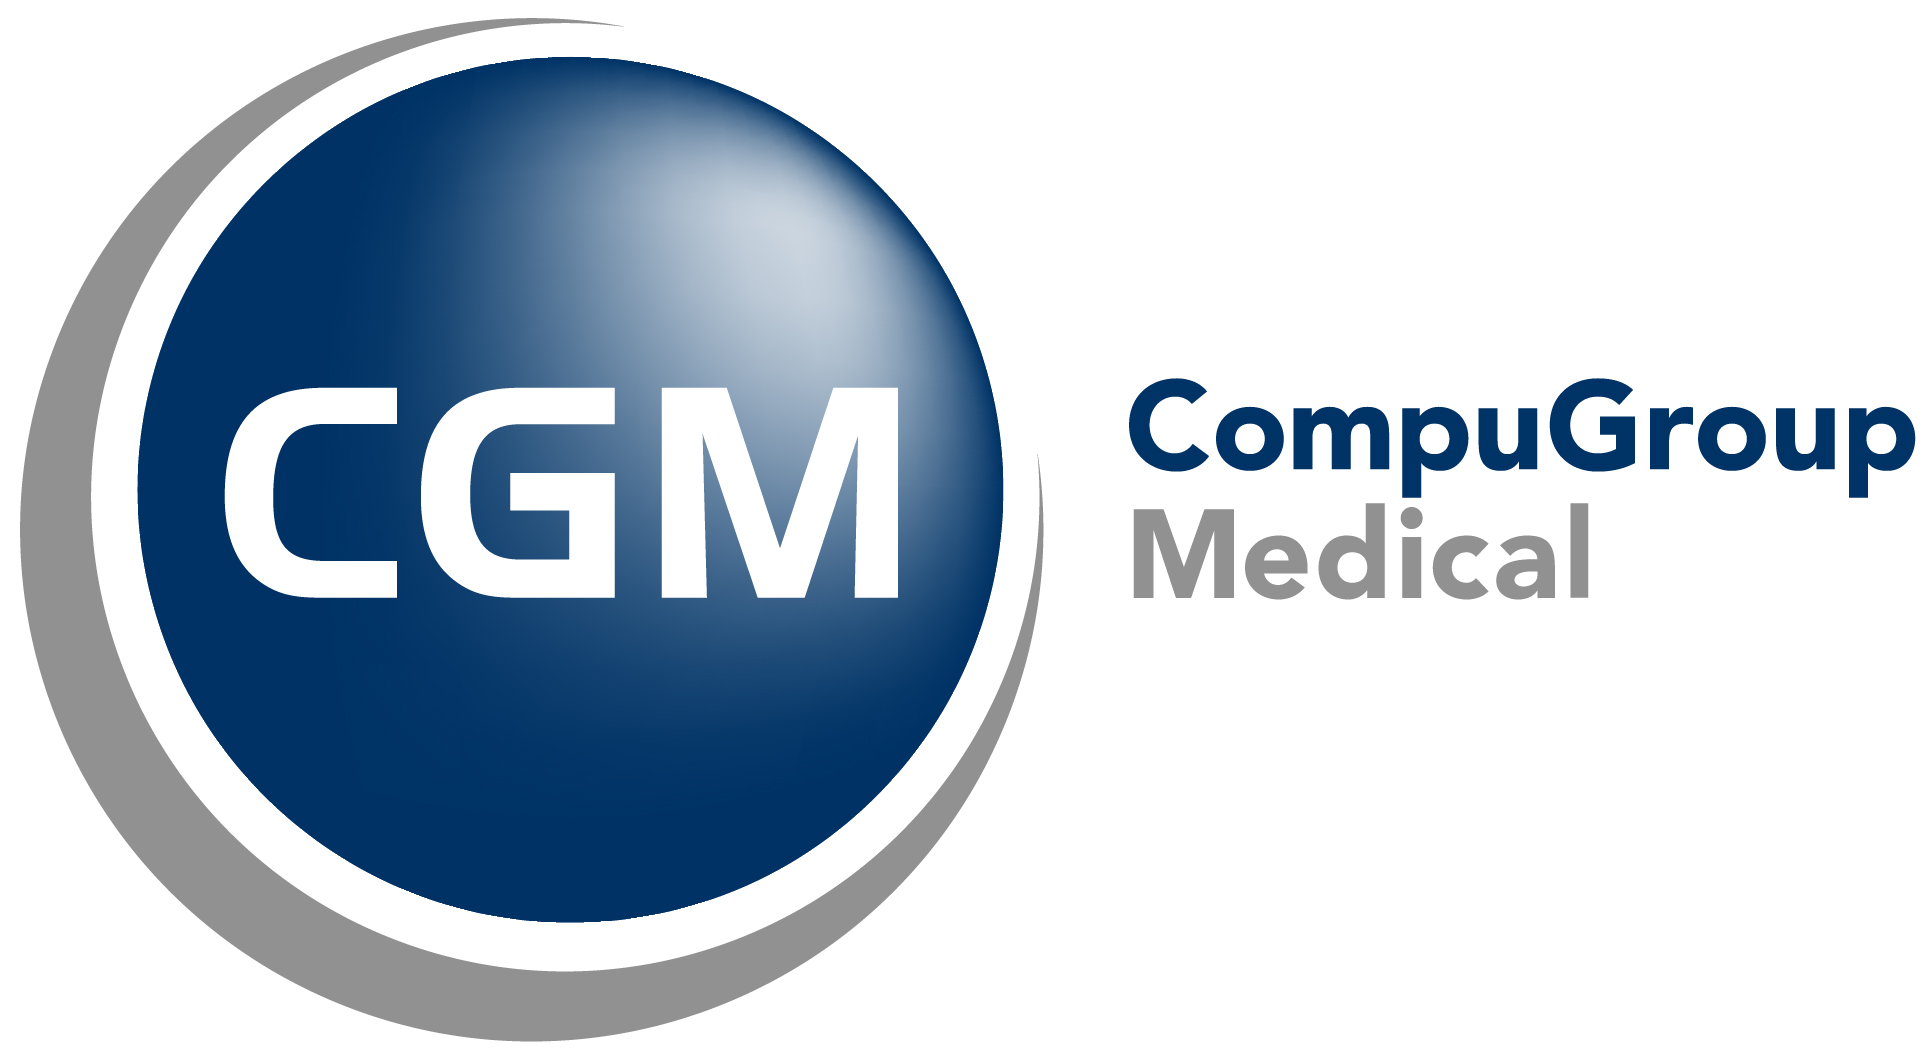 [Translate to Villingen-Schwenningen:] Logo CGM CompuGroup Medical